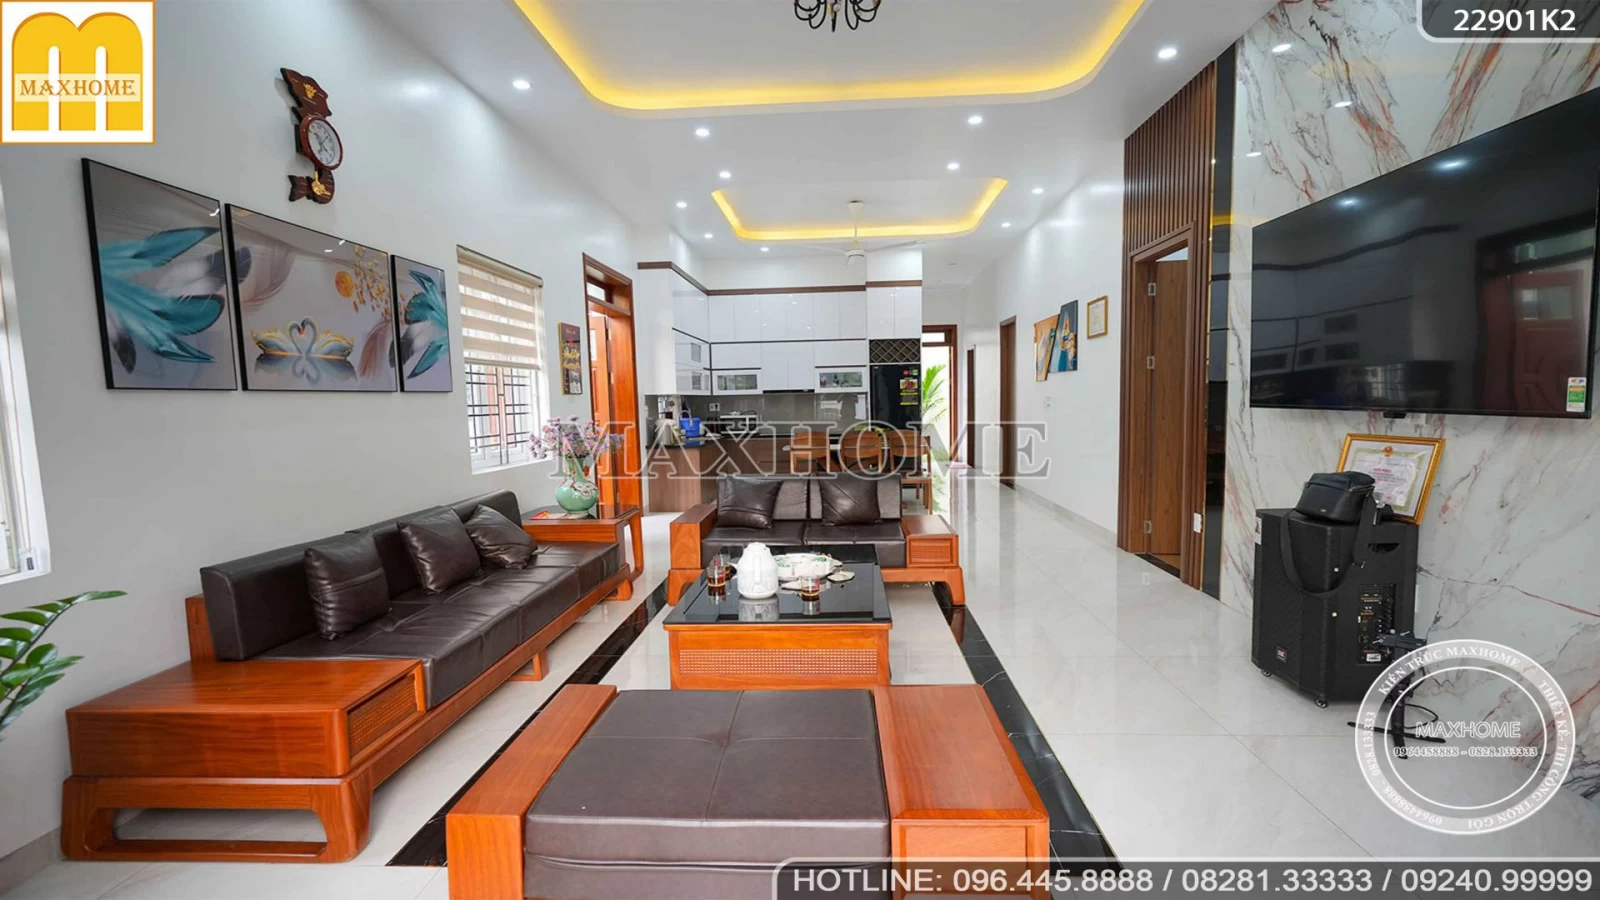 Ngắm nhìn trọn bộ nội thất hiện đại, sang trọng cho ngôi nhà vườn mái Thái | MH03015